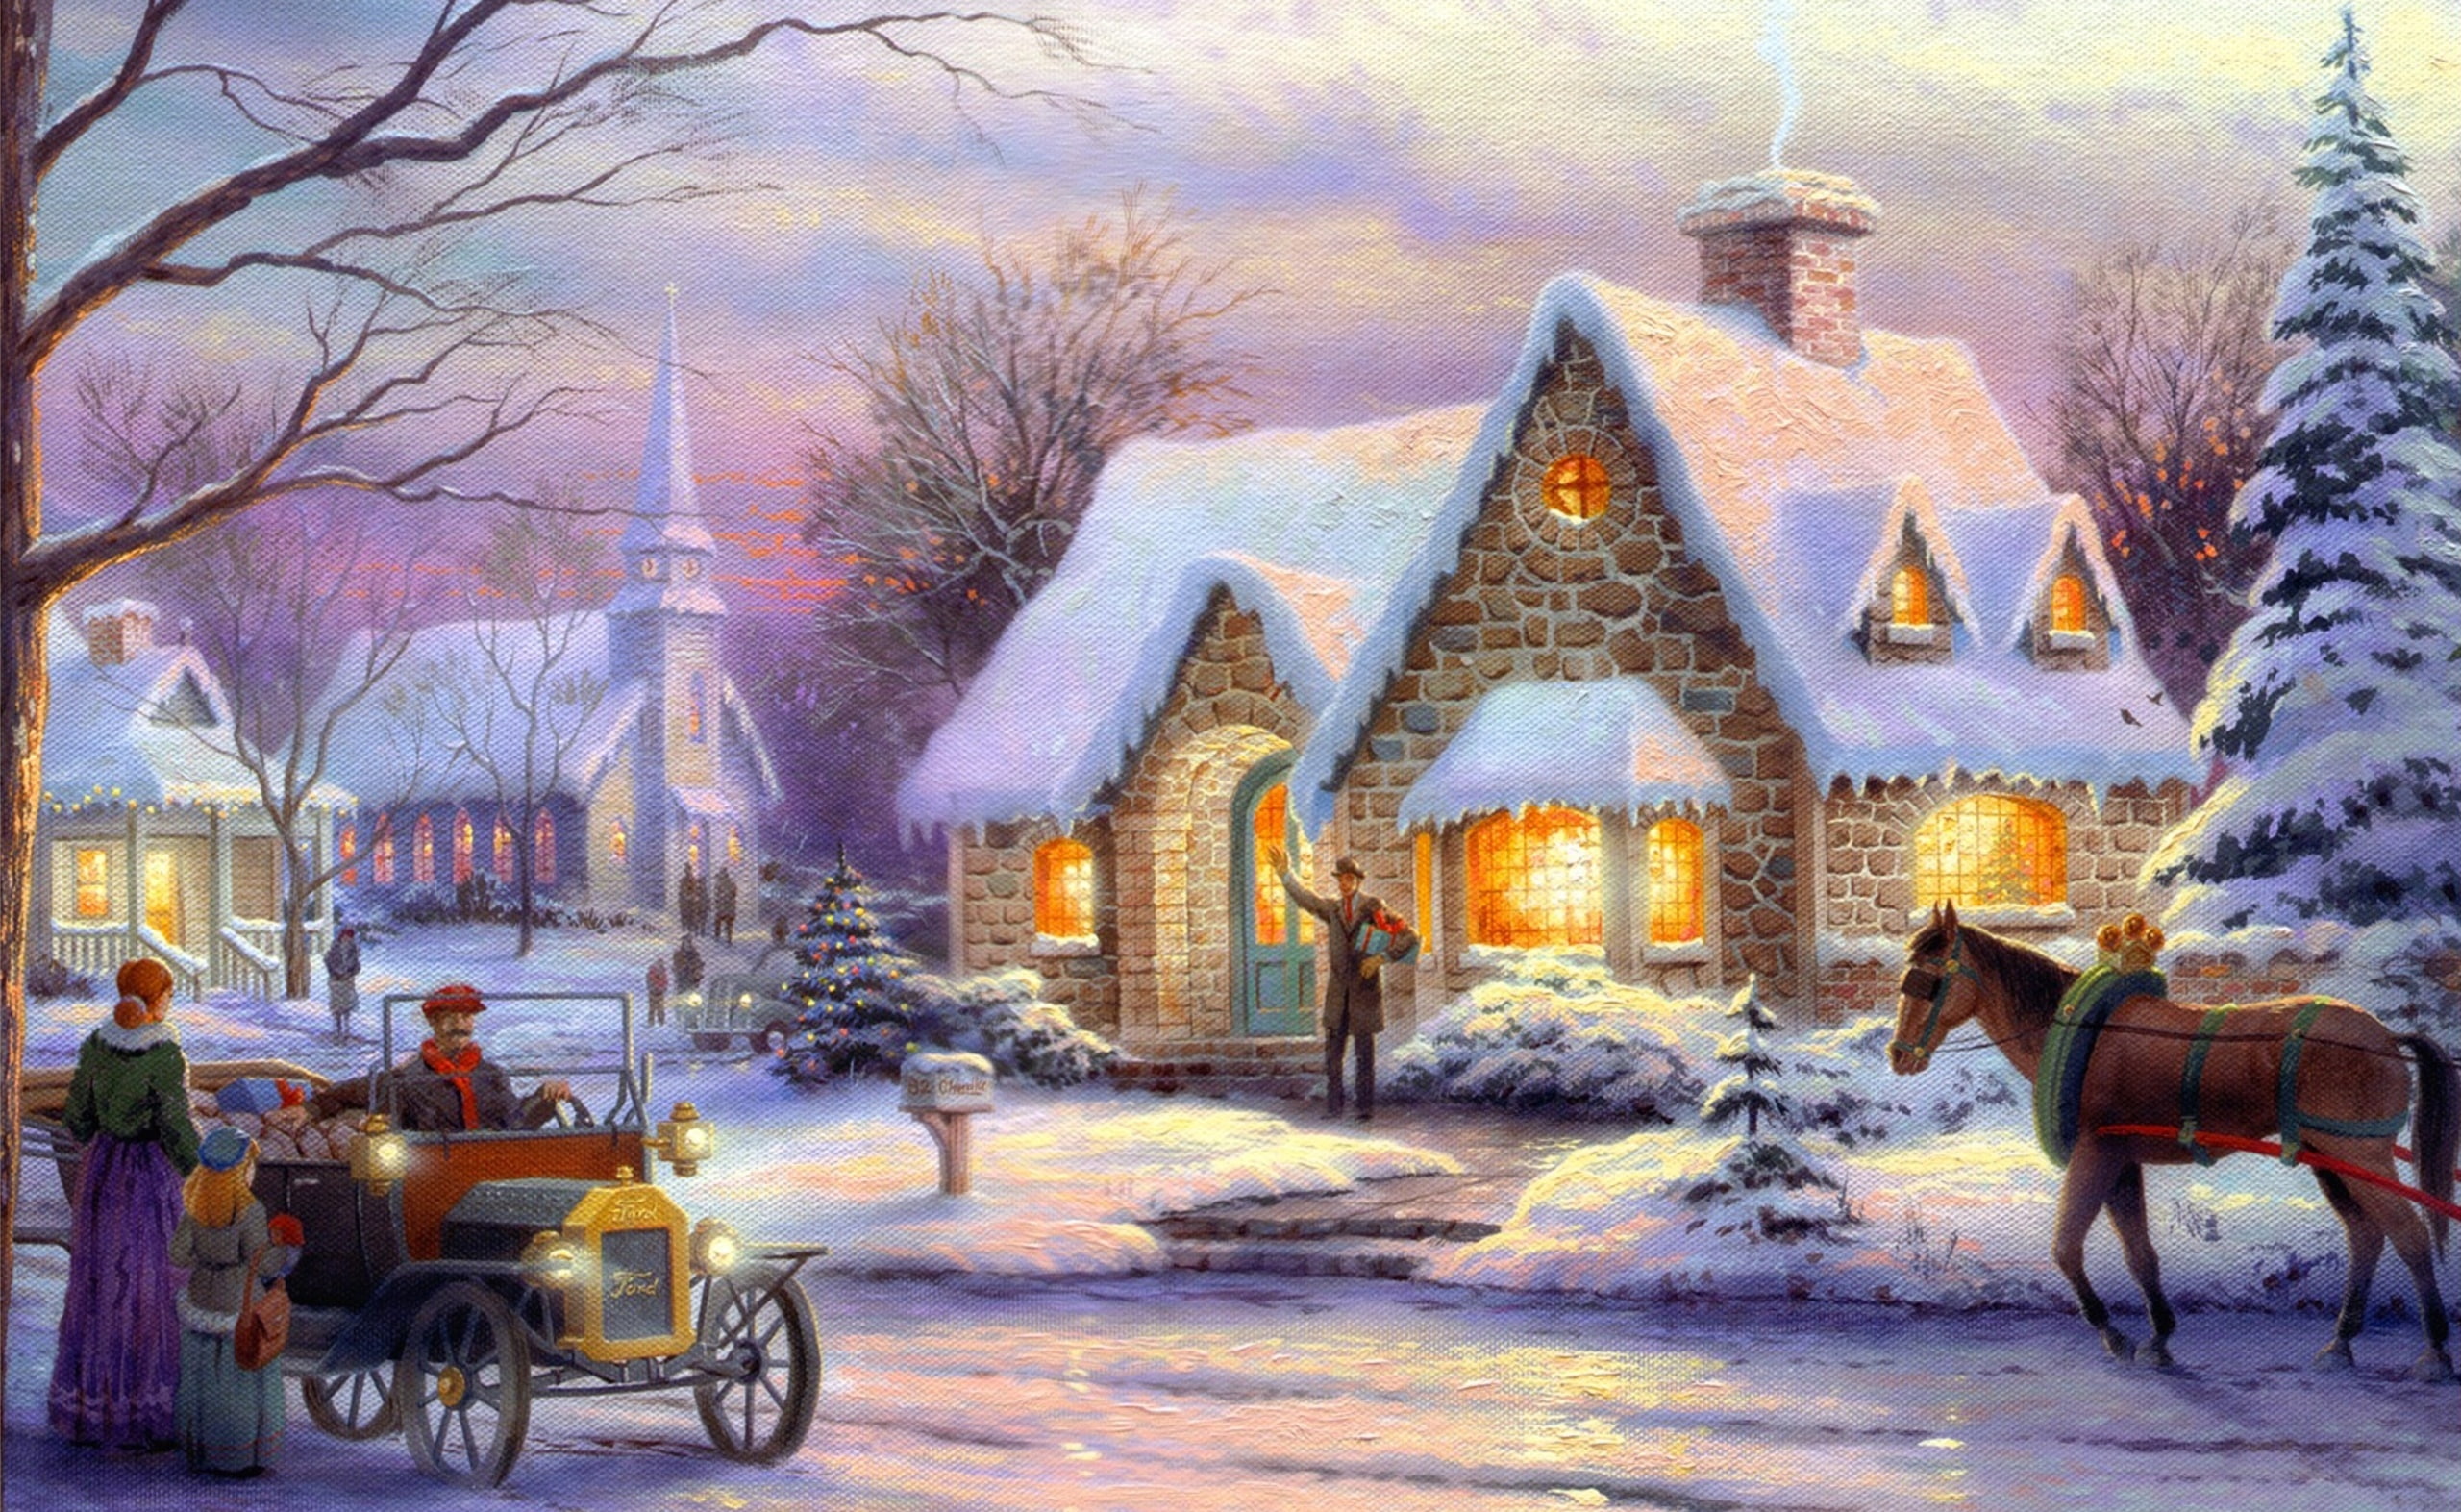 Memories Of Christmas by Thomas Kinkade